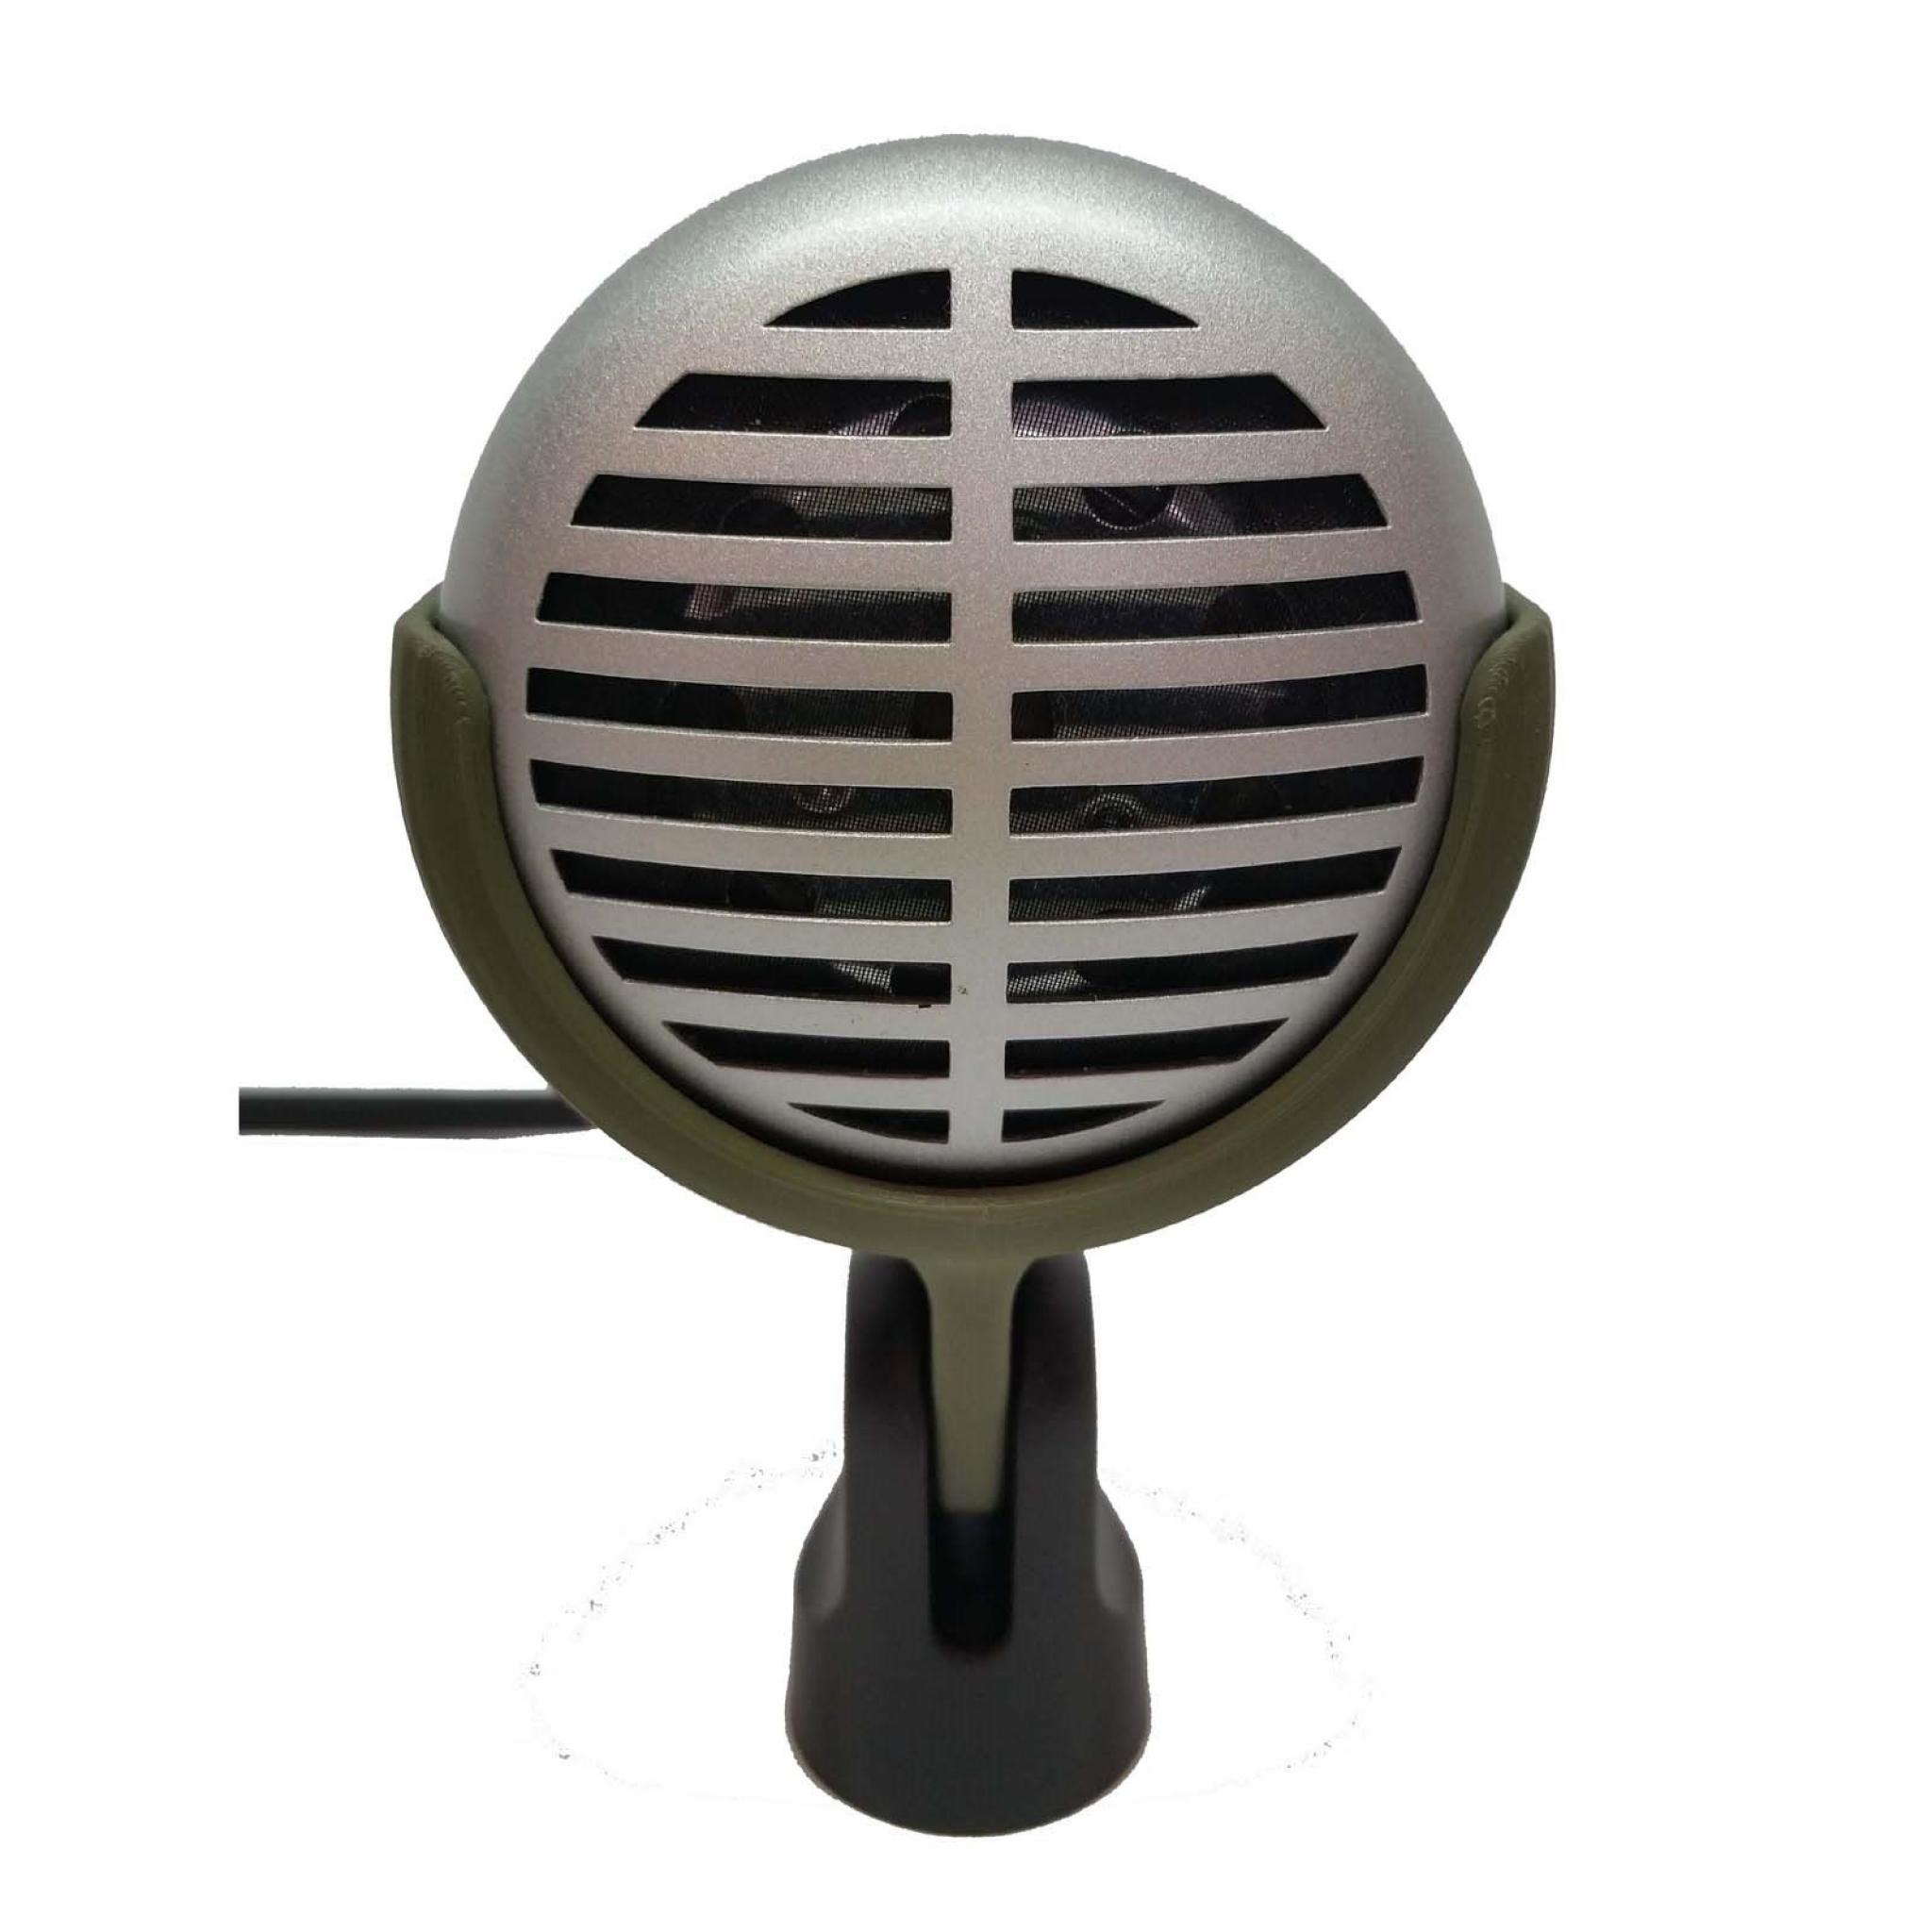 Soporte de micrófono Bullet compatible con Shure 520DX Green Bullet amarillo pálido Ammo Clip 520 Superlux D112/C y otros micrófonos de armónica similares 